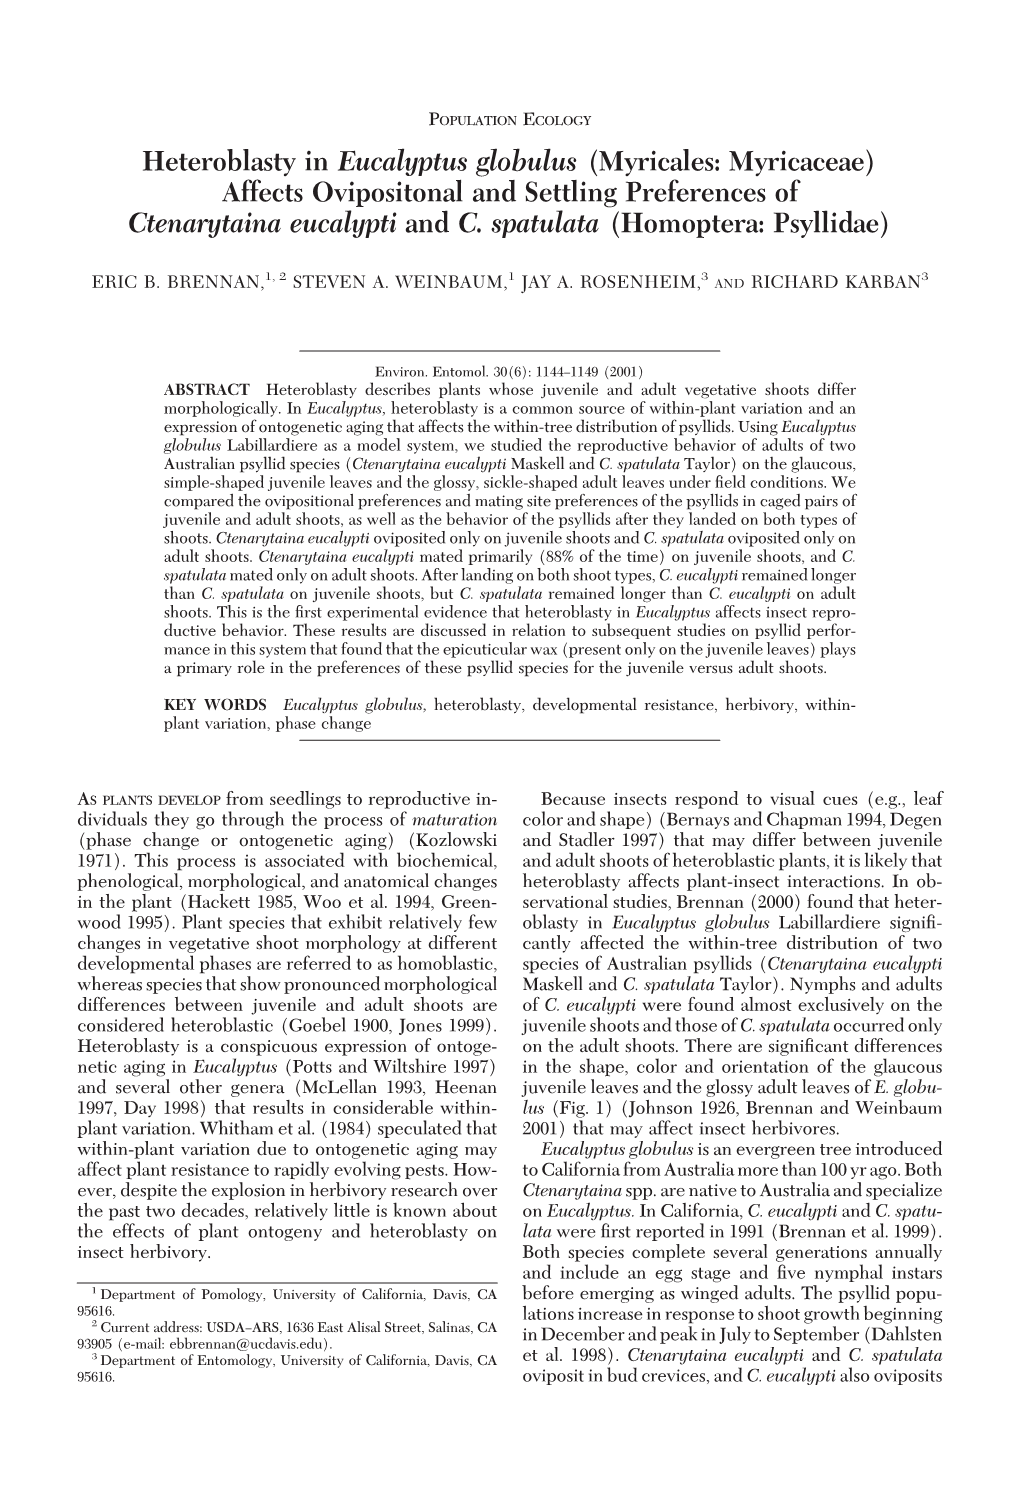 Heteroblasty in Eucalyptus Globulus (Myricales: Myricaceae) Affects Ovipositonal and Settling Preferences of Ctenarytaina Eucalypti and C